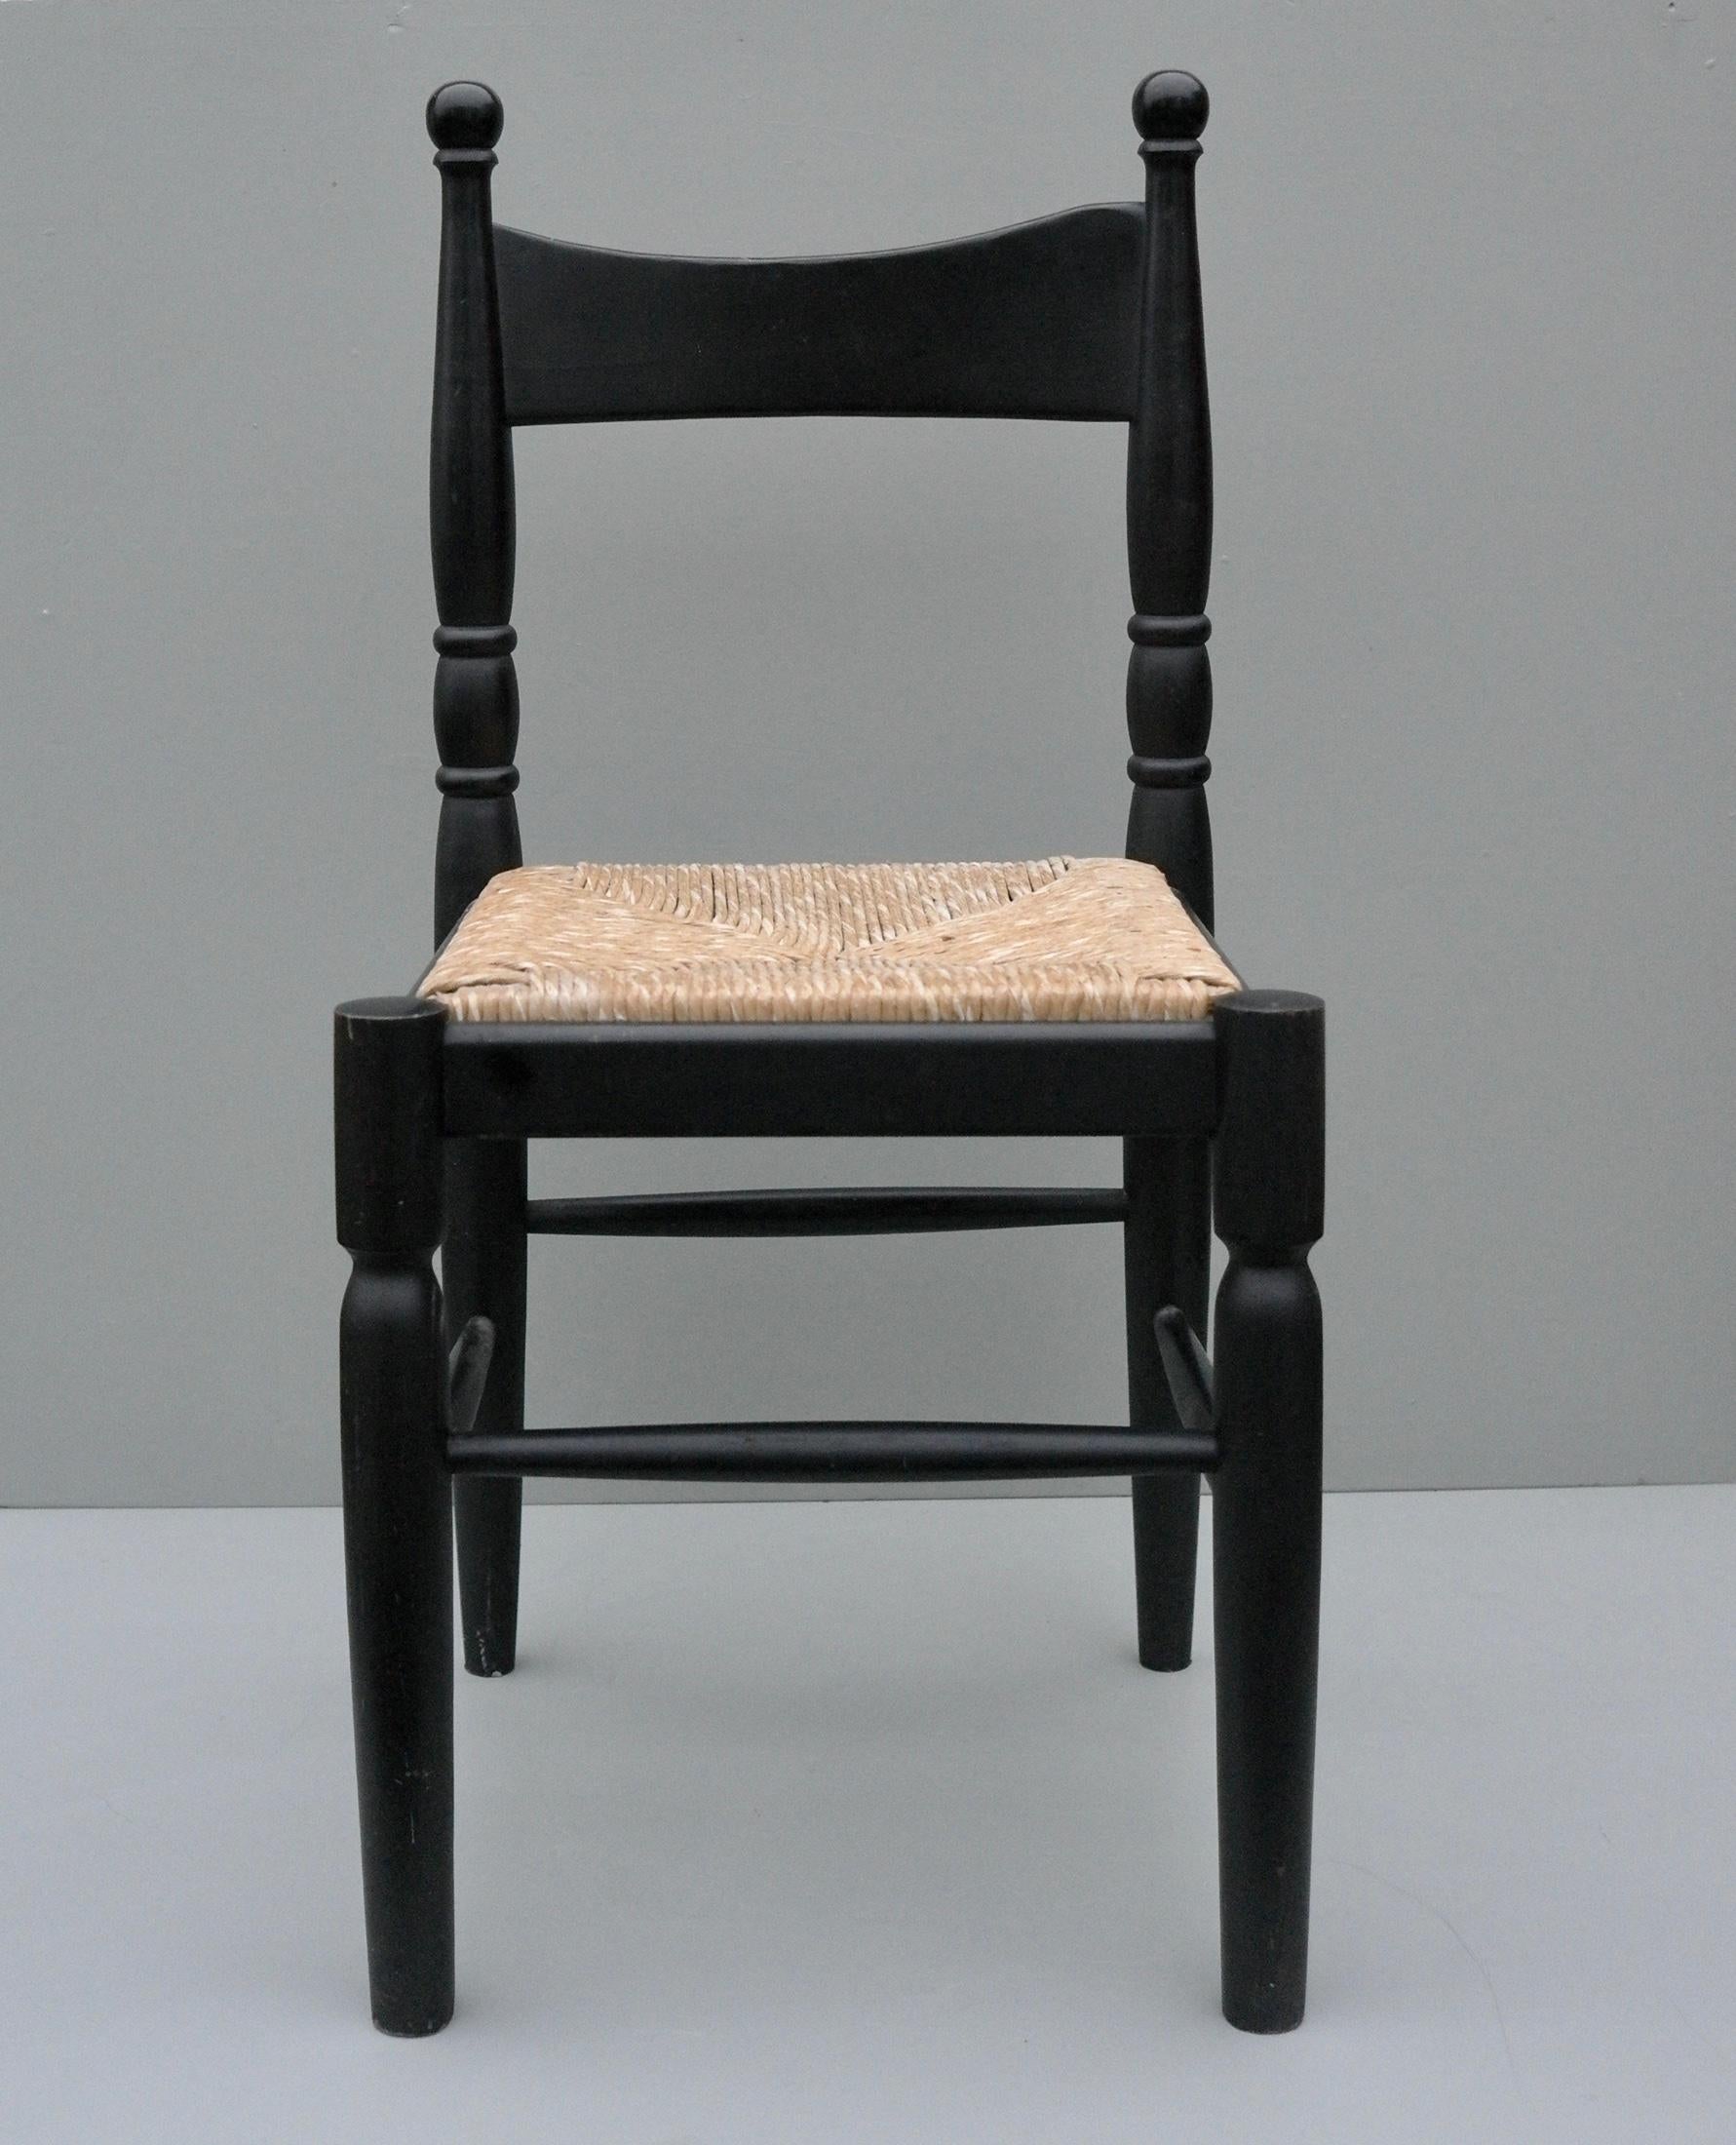 Chaise d'appoint asymétrique noire surréaliste en bois et jonc, France, années 1960.